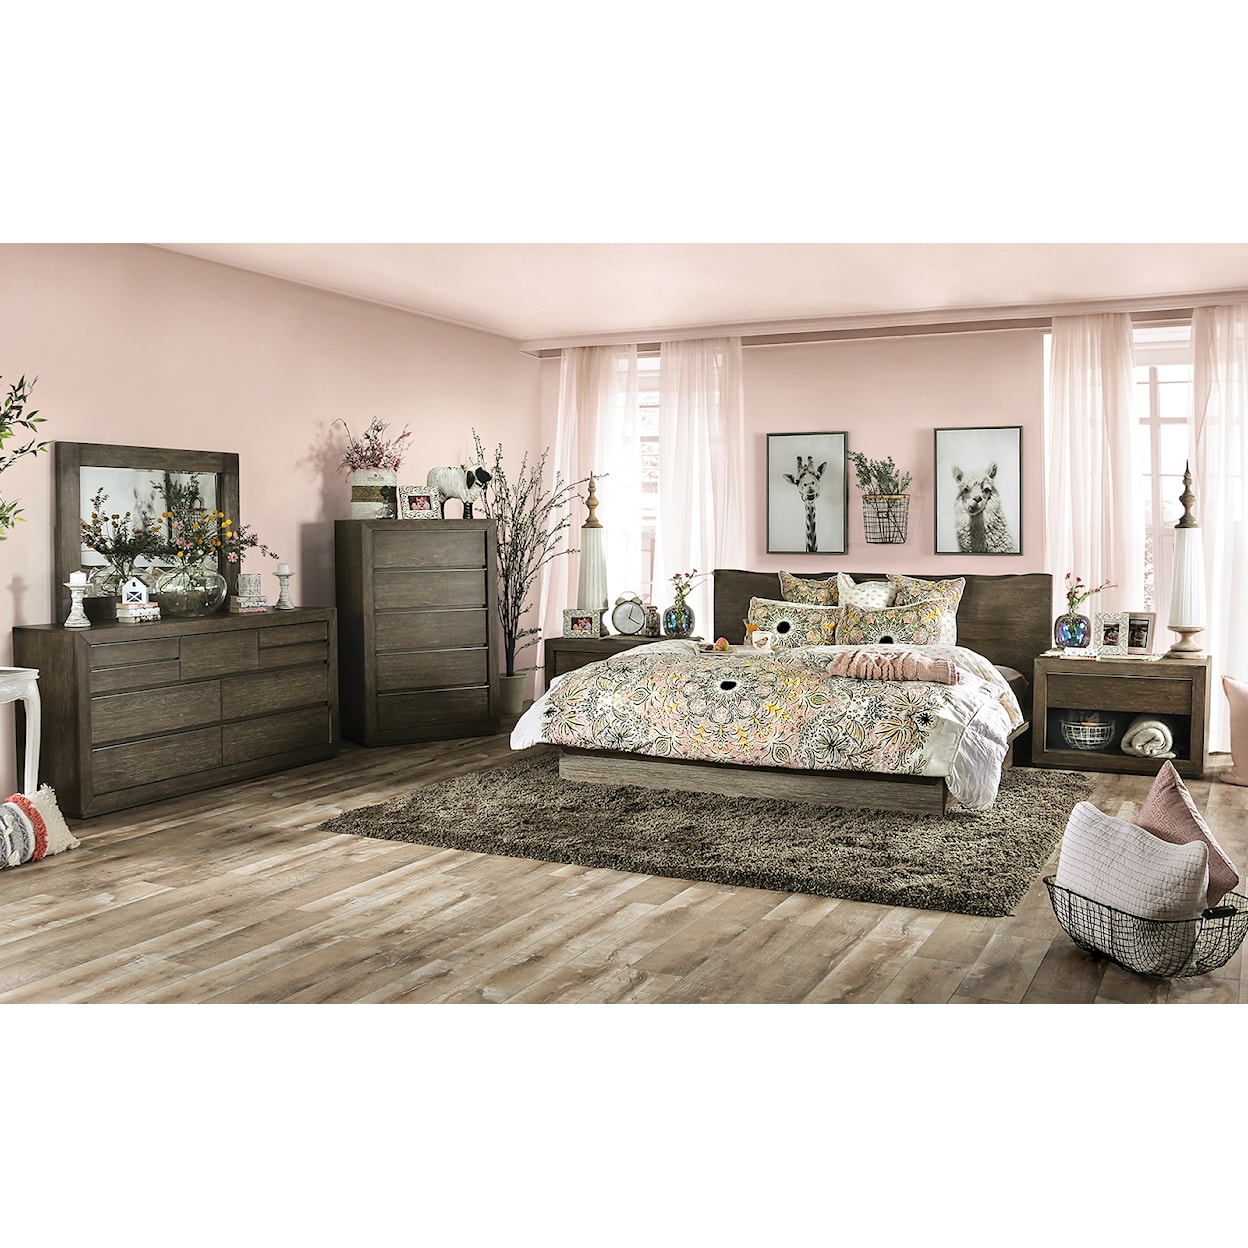 Furniture of America Bridgewater Queen Bedroom Set